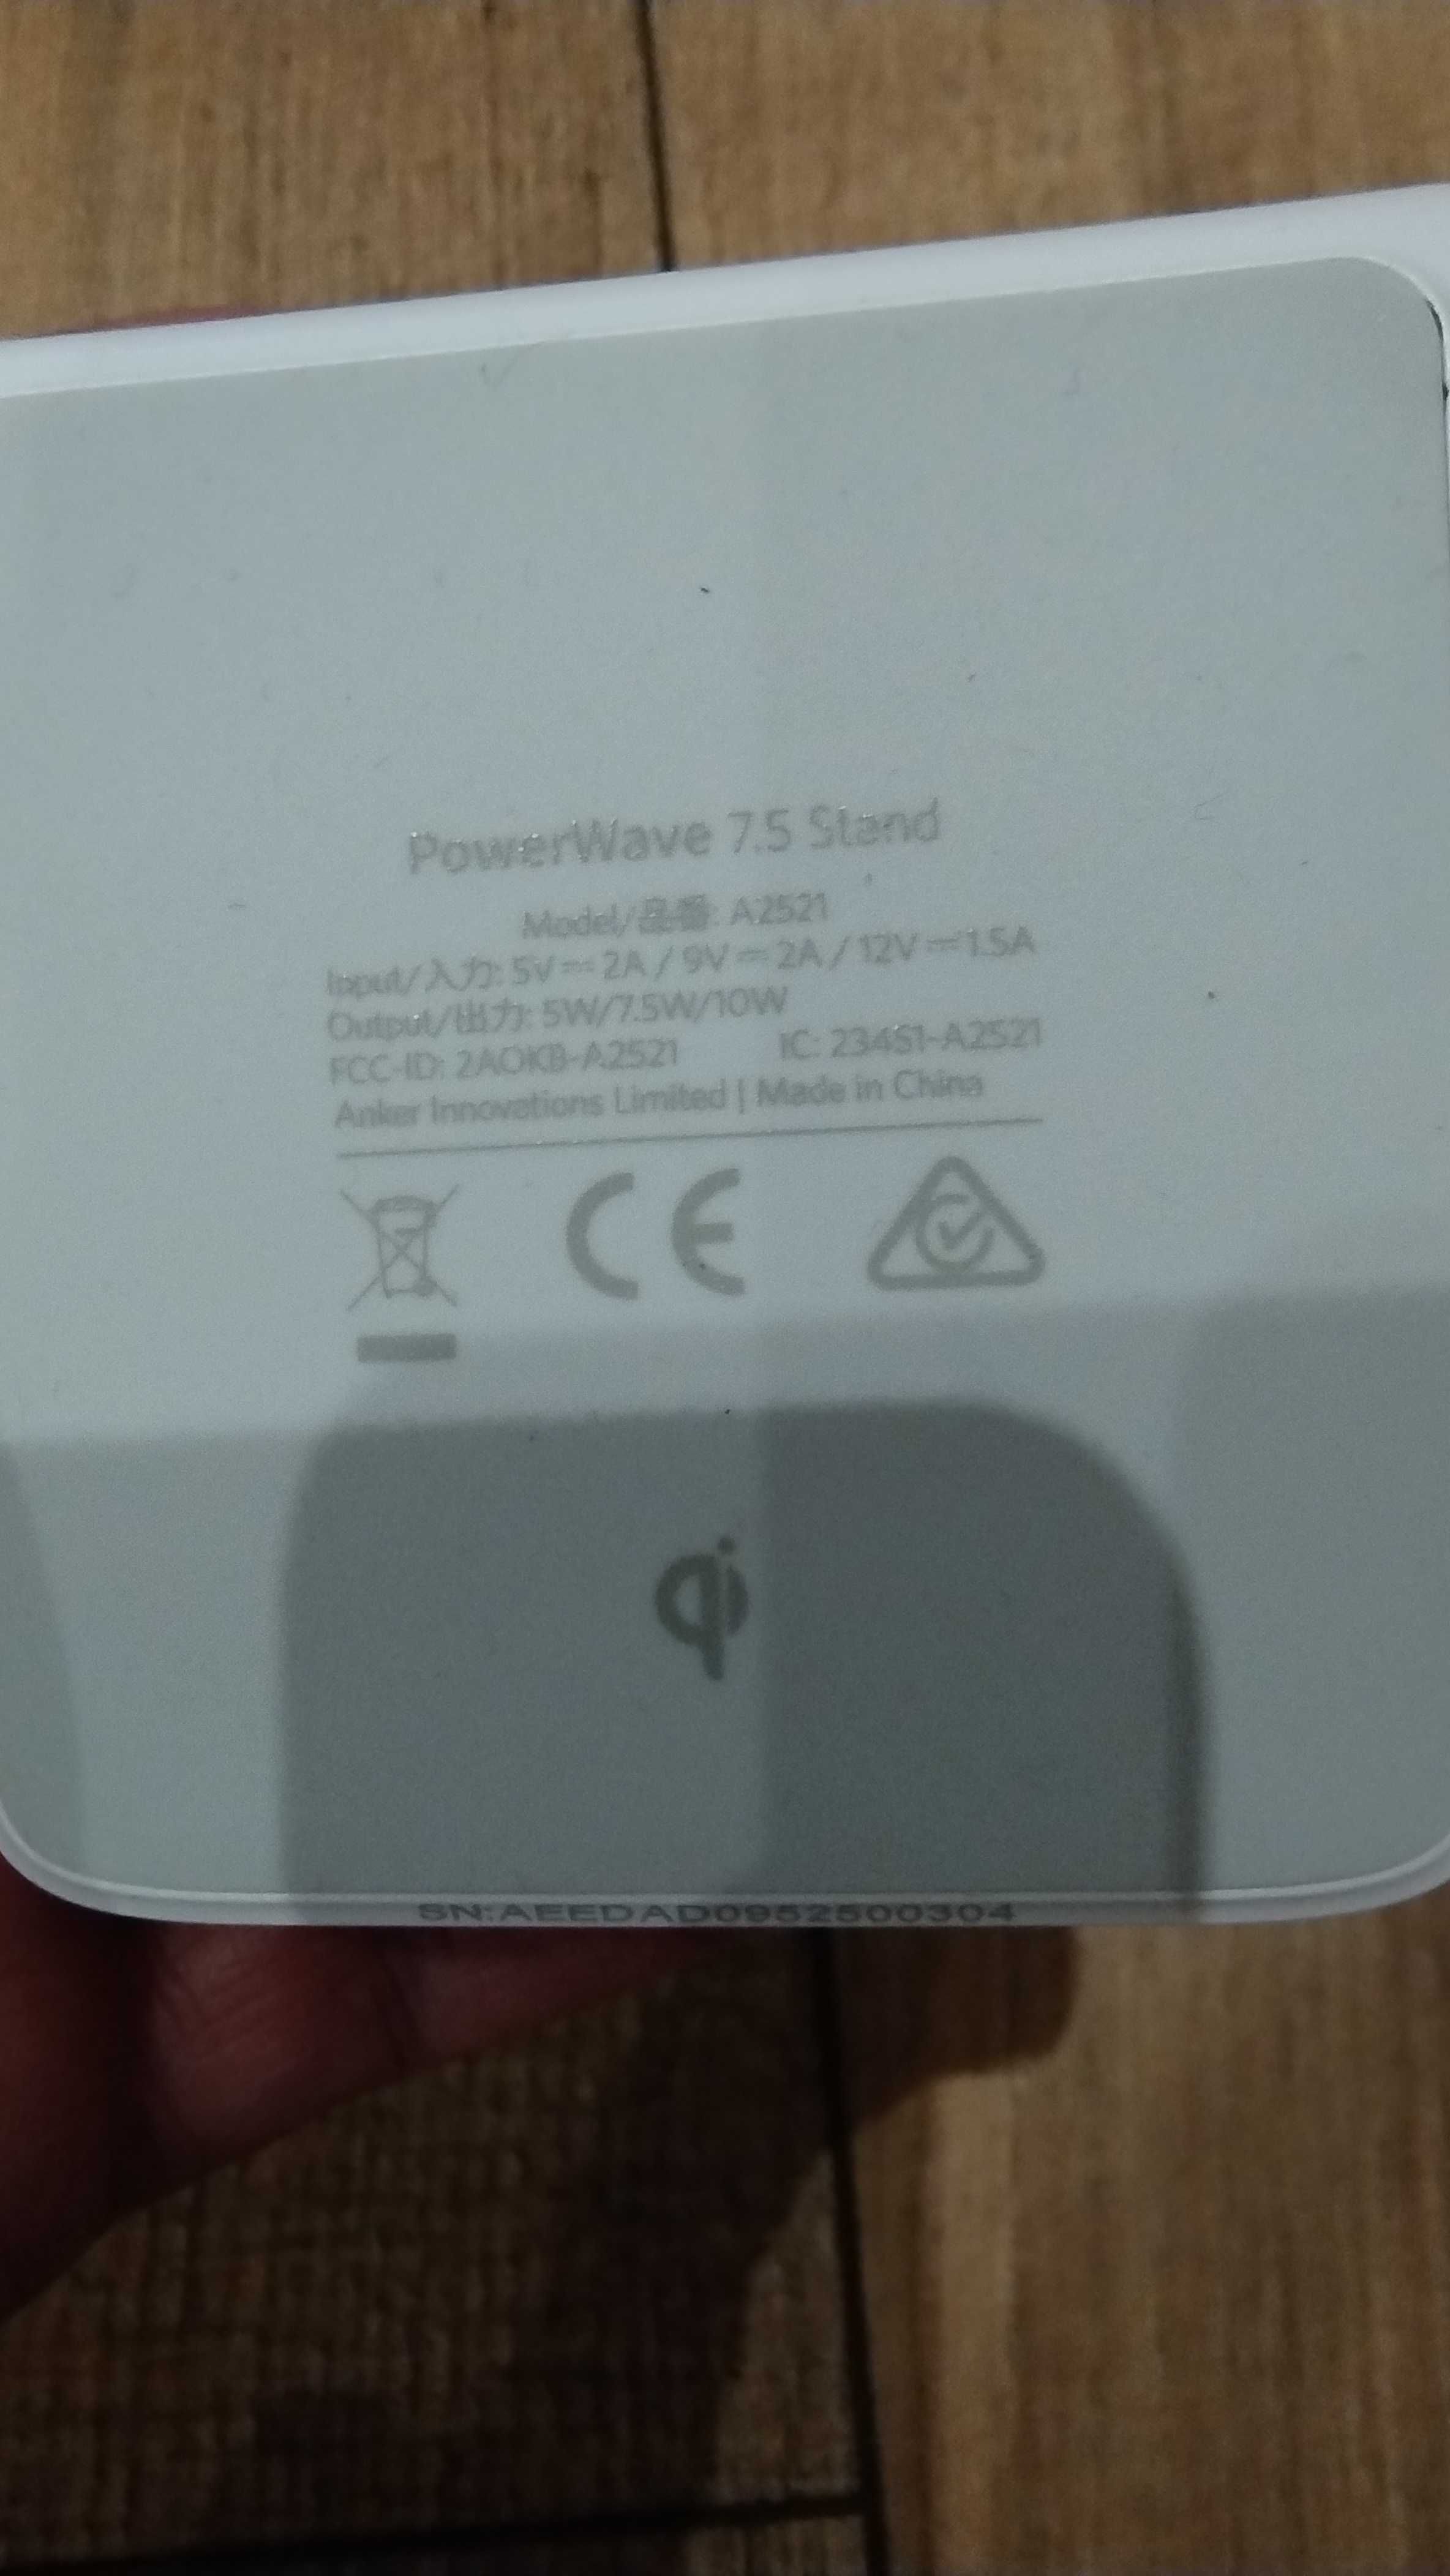 Bezprzewodowa ladowarka Anker PowerWave 7.5 Stand A2521 do telefonow